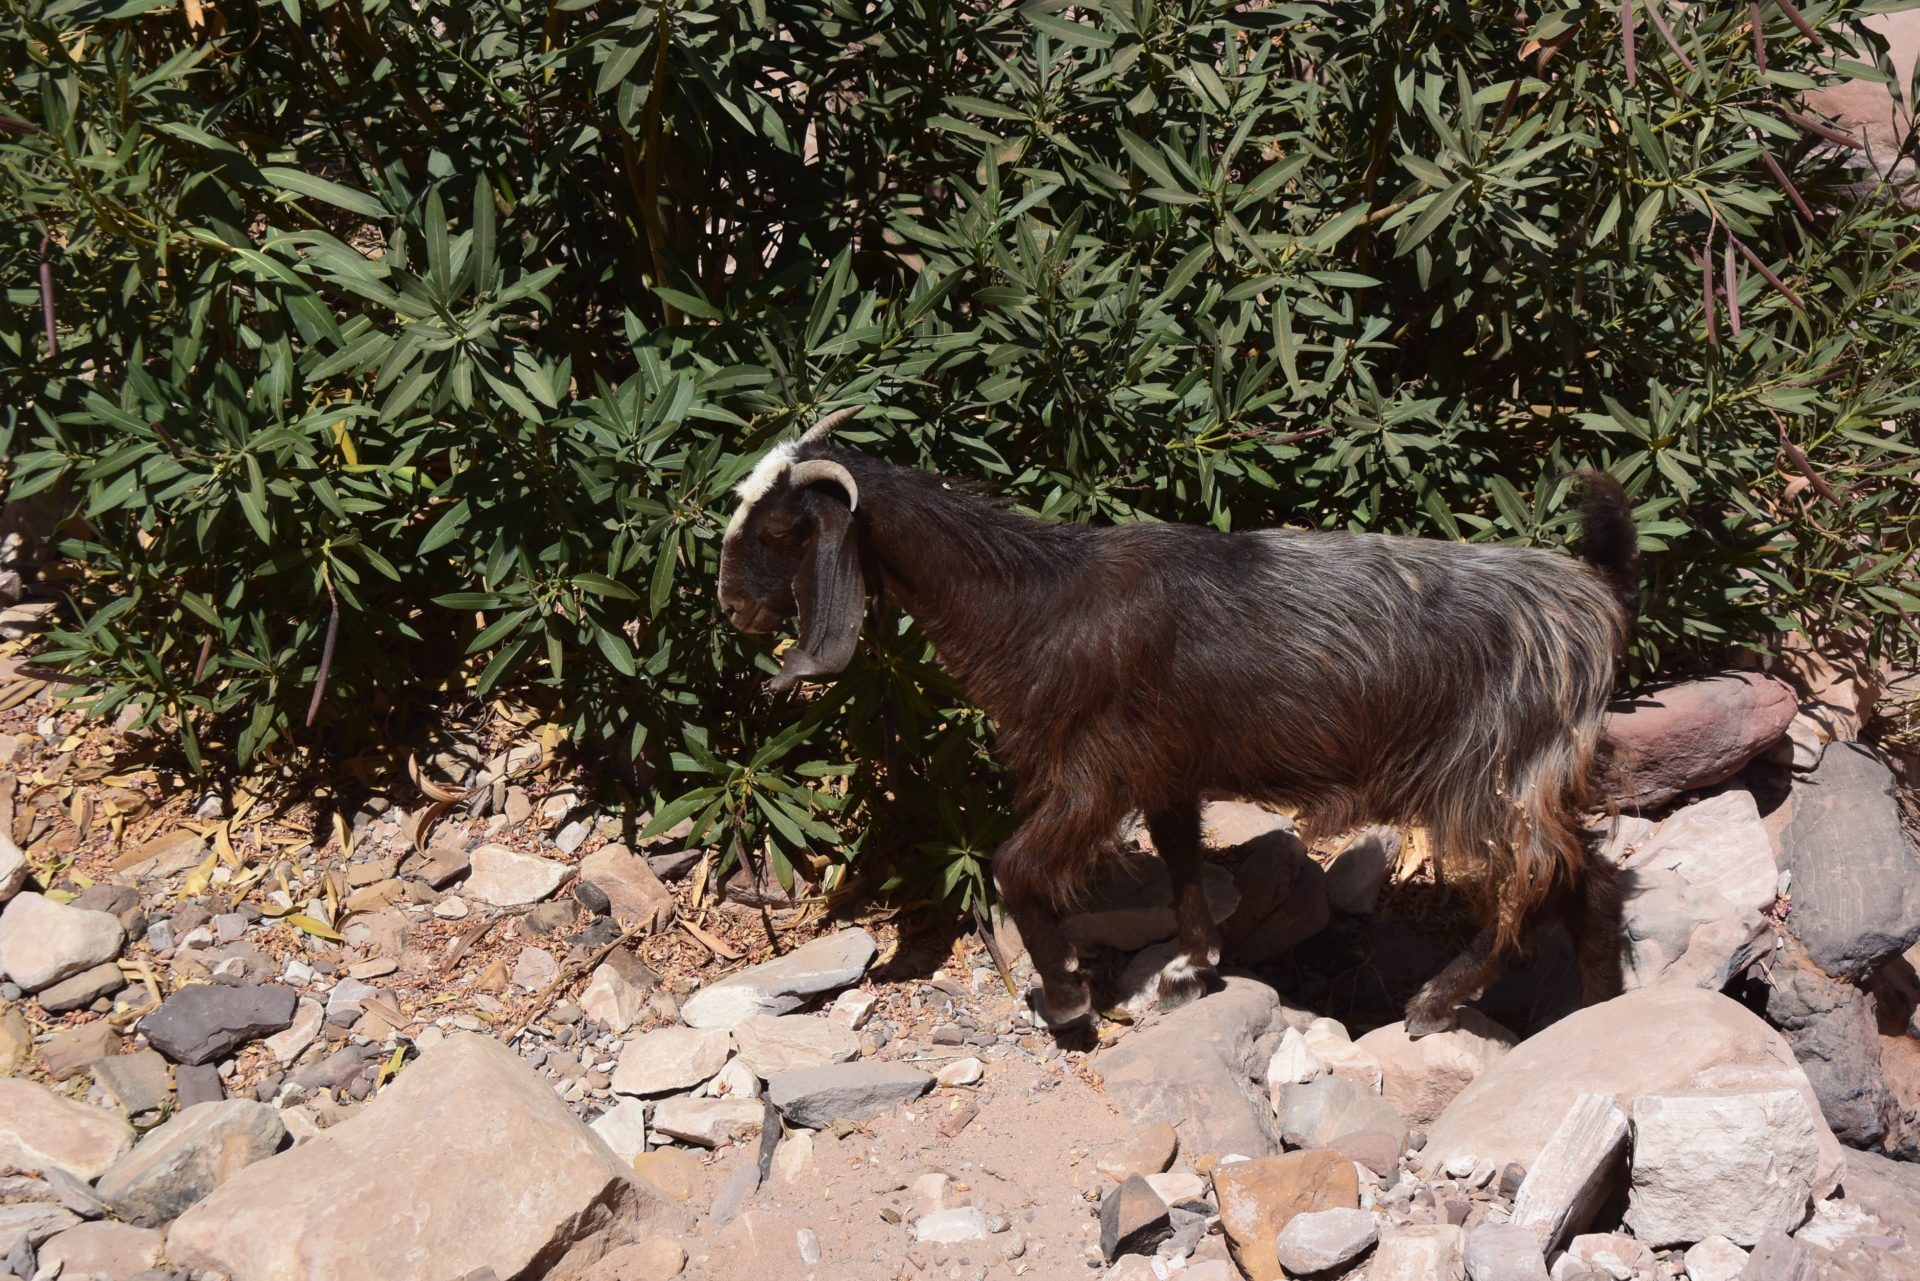 a goat walking on rocks